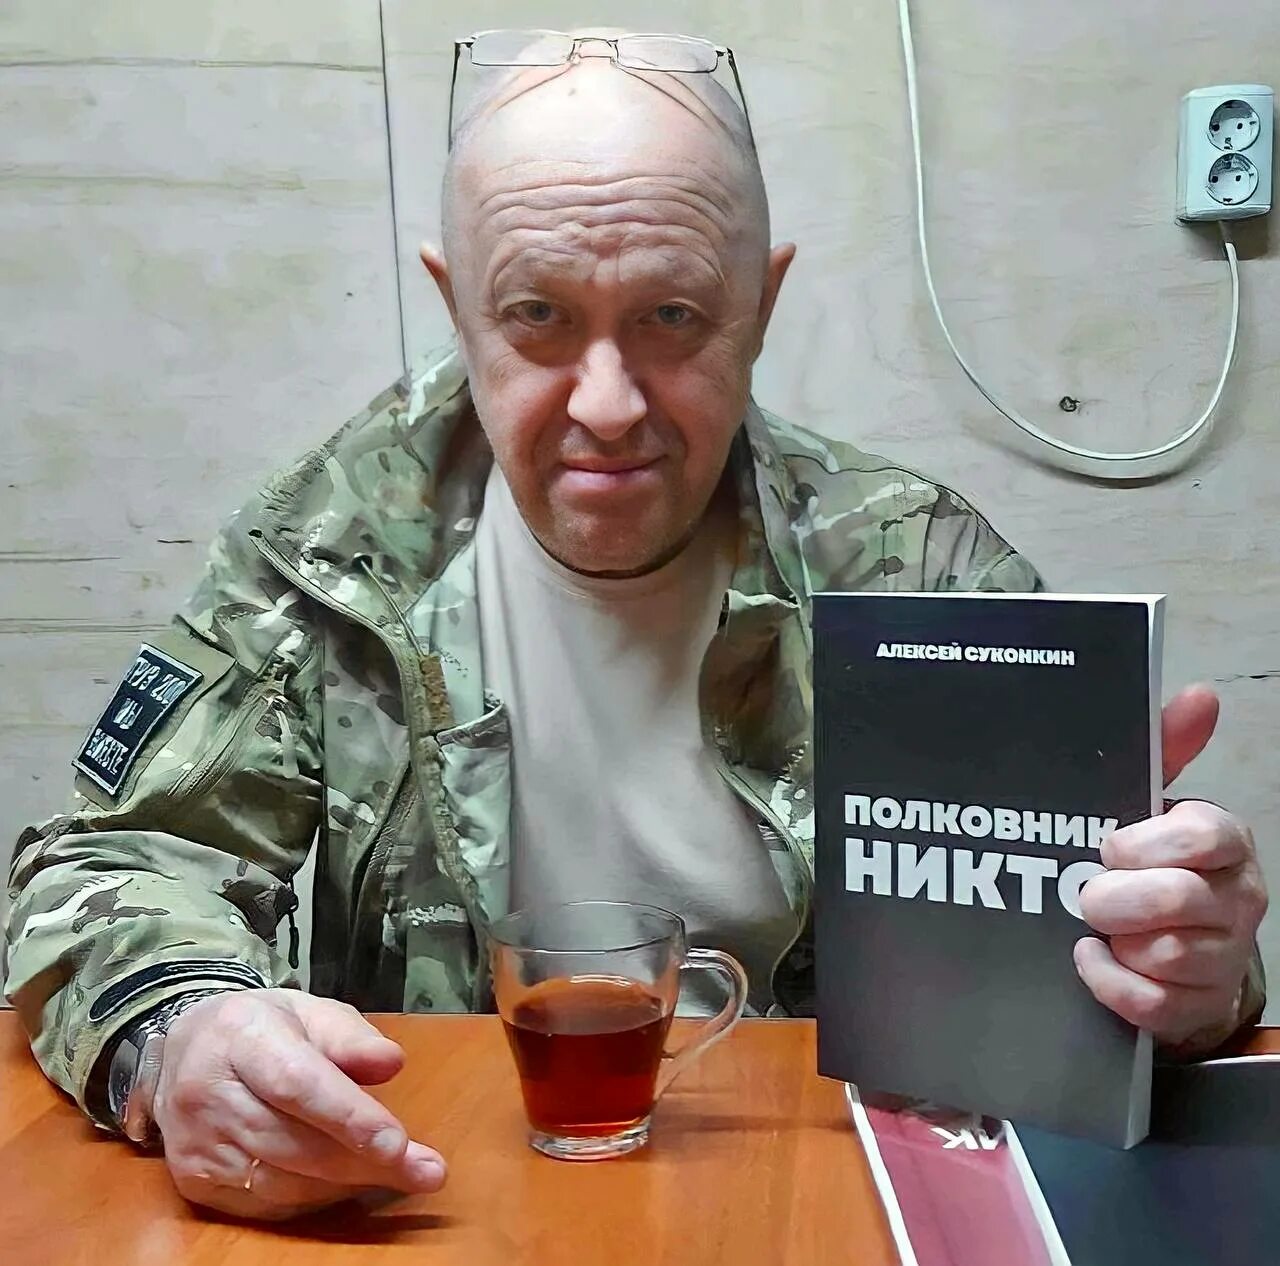 Глава ЧВК Вагнер Пригожин. Полковнику никто суконкин купить книгу